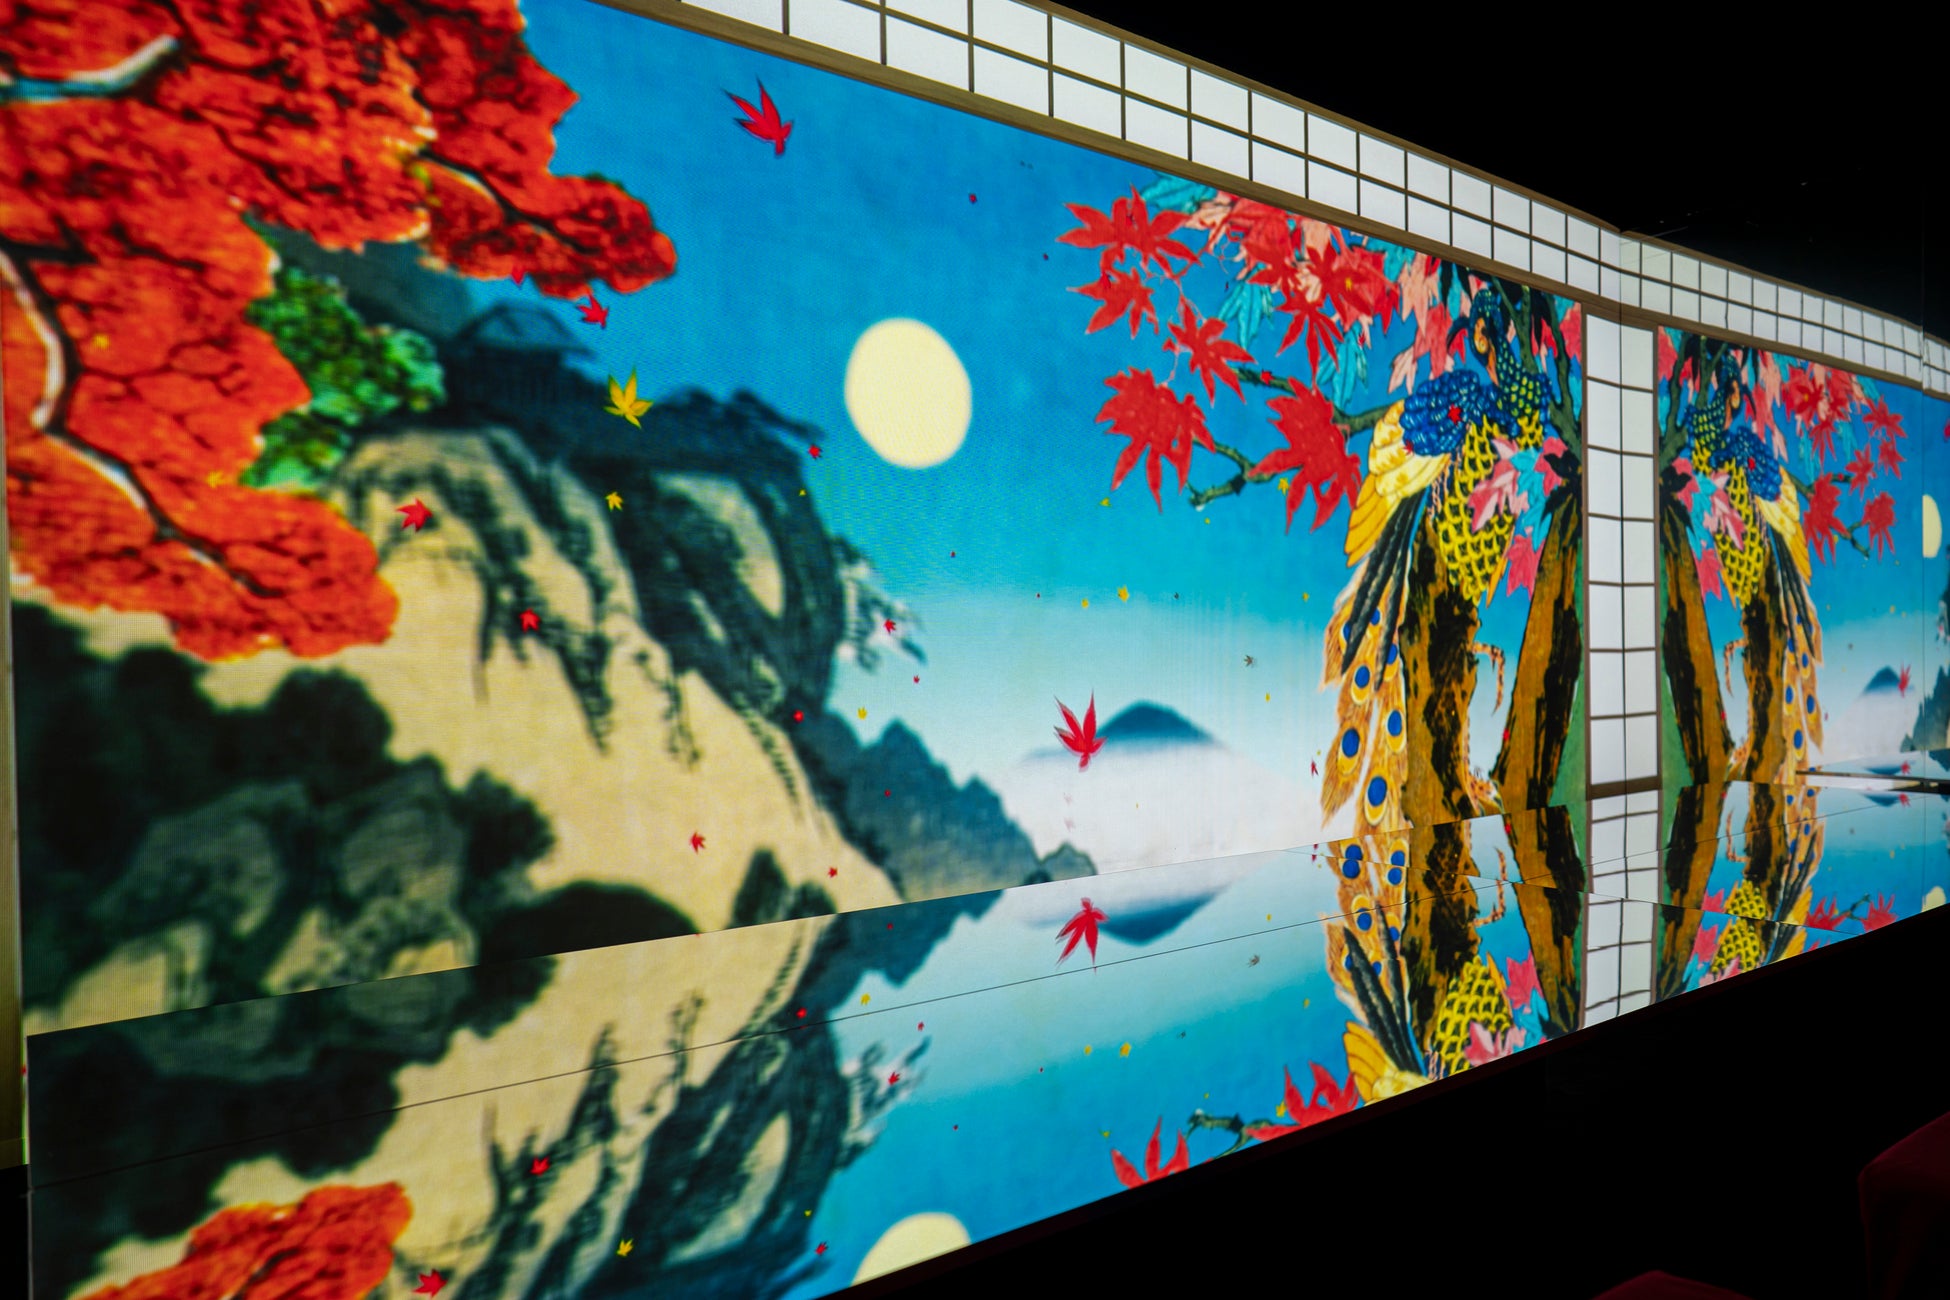 一旗プロデュース「動き出す浮世絵展 MILANO」の公式記録映像“彩”を公開。古来より愛される花、彩り豊かな詩情に富む花鳥画の世界を眺める。